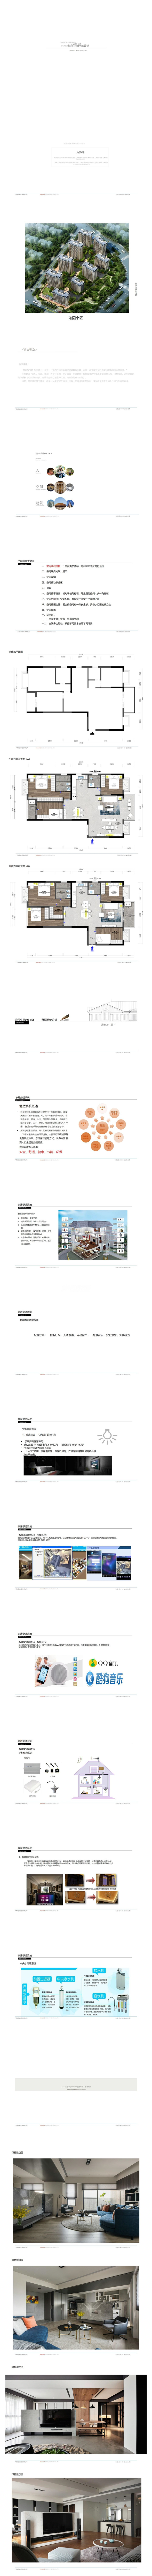 南寧沁園126㎡戶型現代簡約裝修風格設計方案解析1